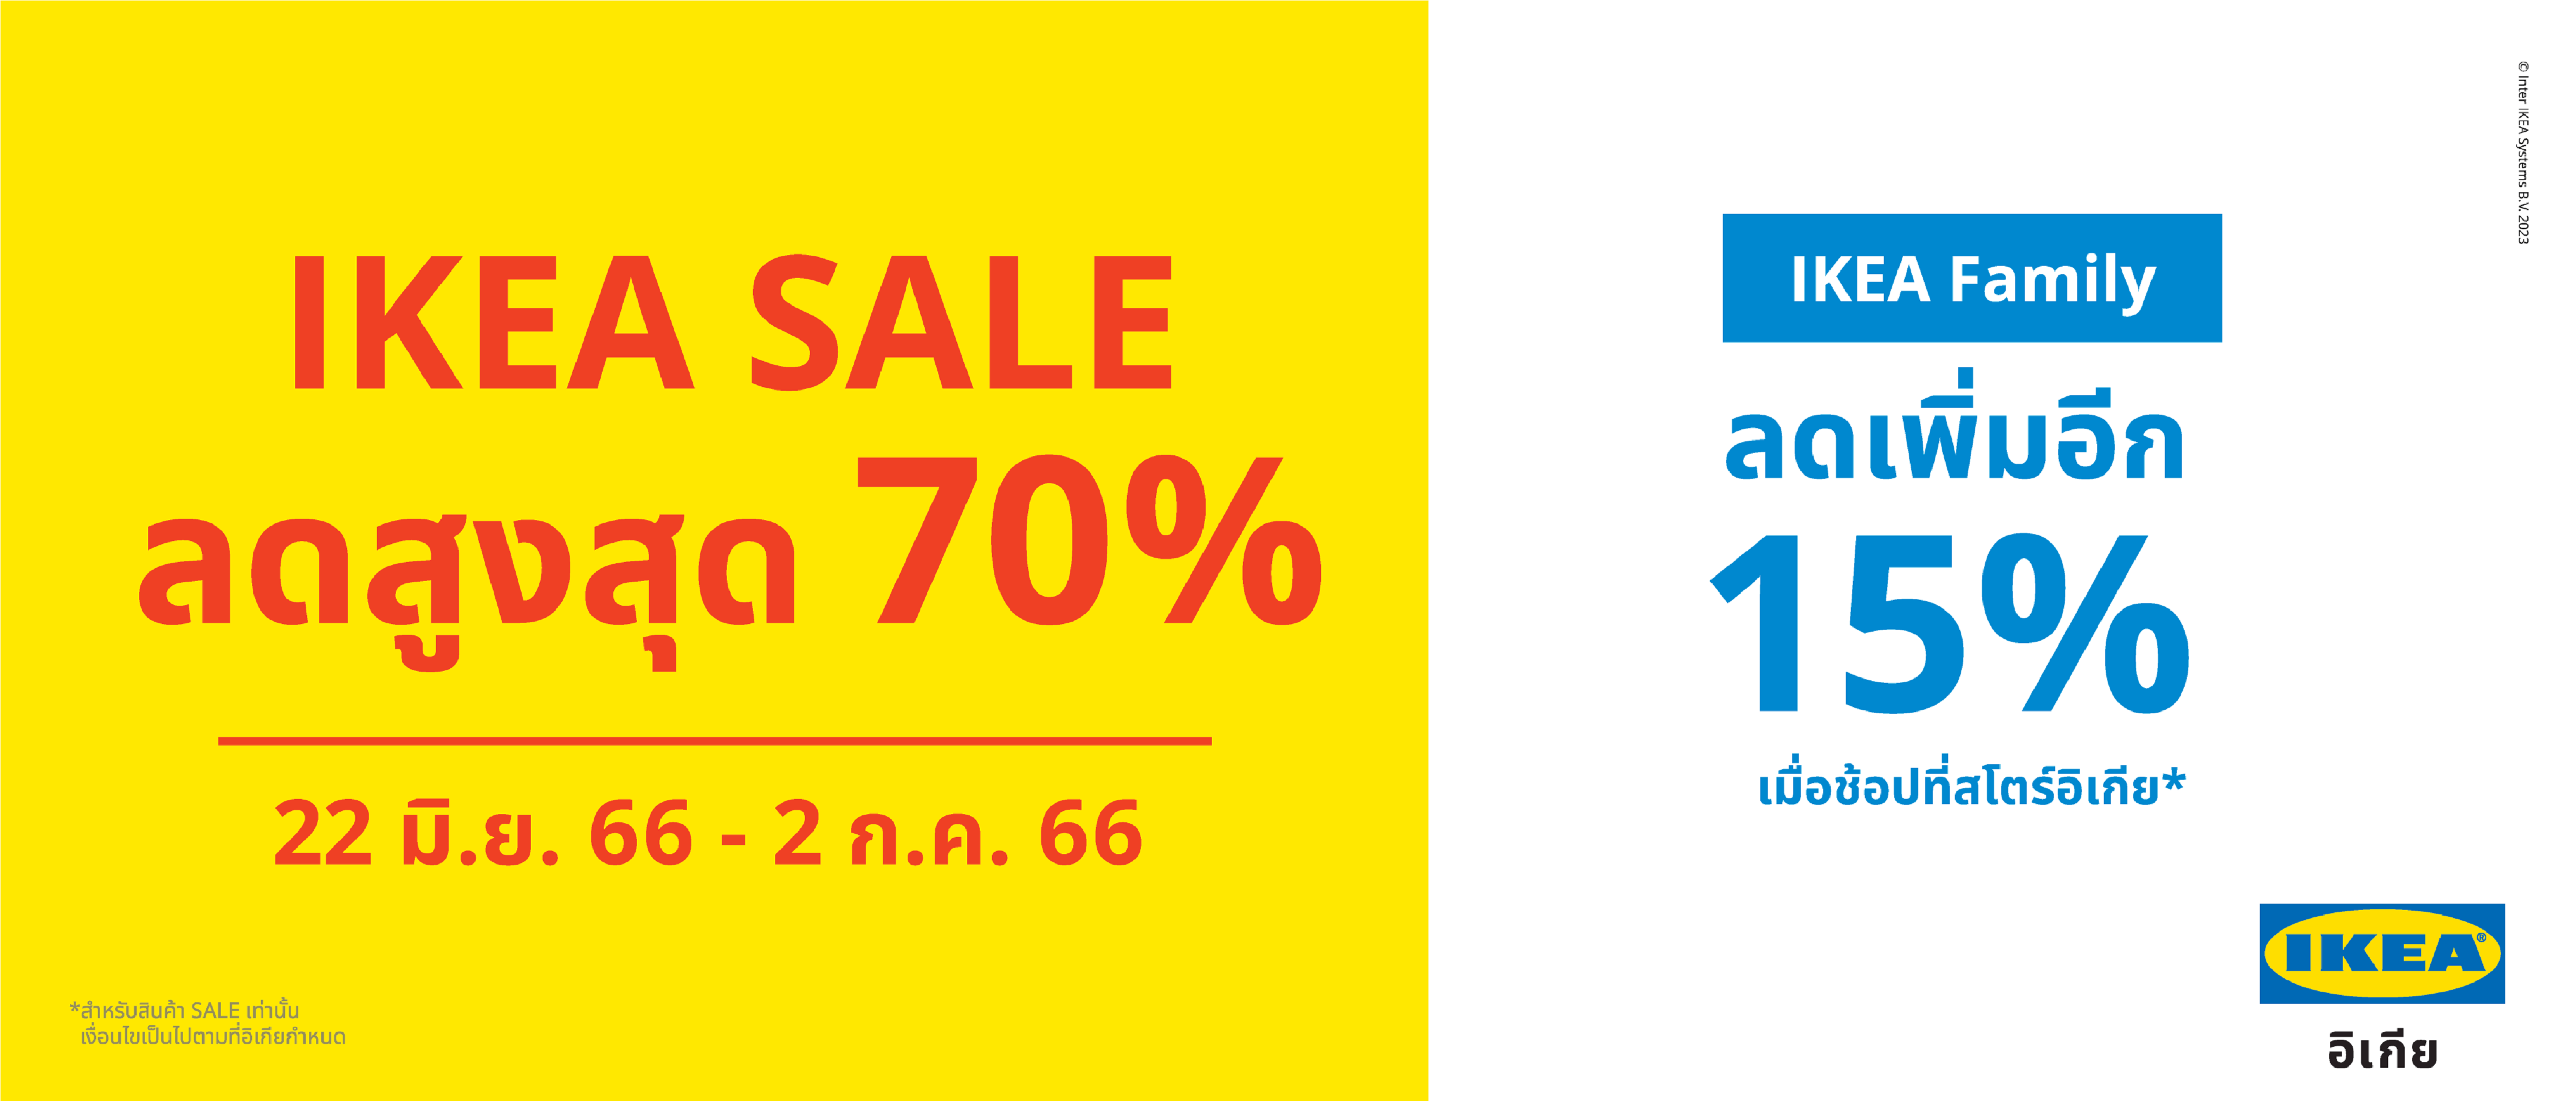 อิเกียยกทัพสินค้าลดราคาครั้งใหญ่ กับ “IKEA Sale”  มอบส่วนลดสูงสุดถึง 70%  